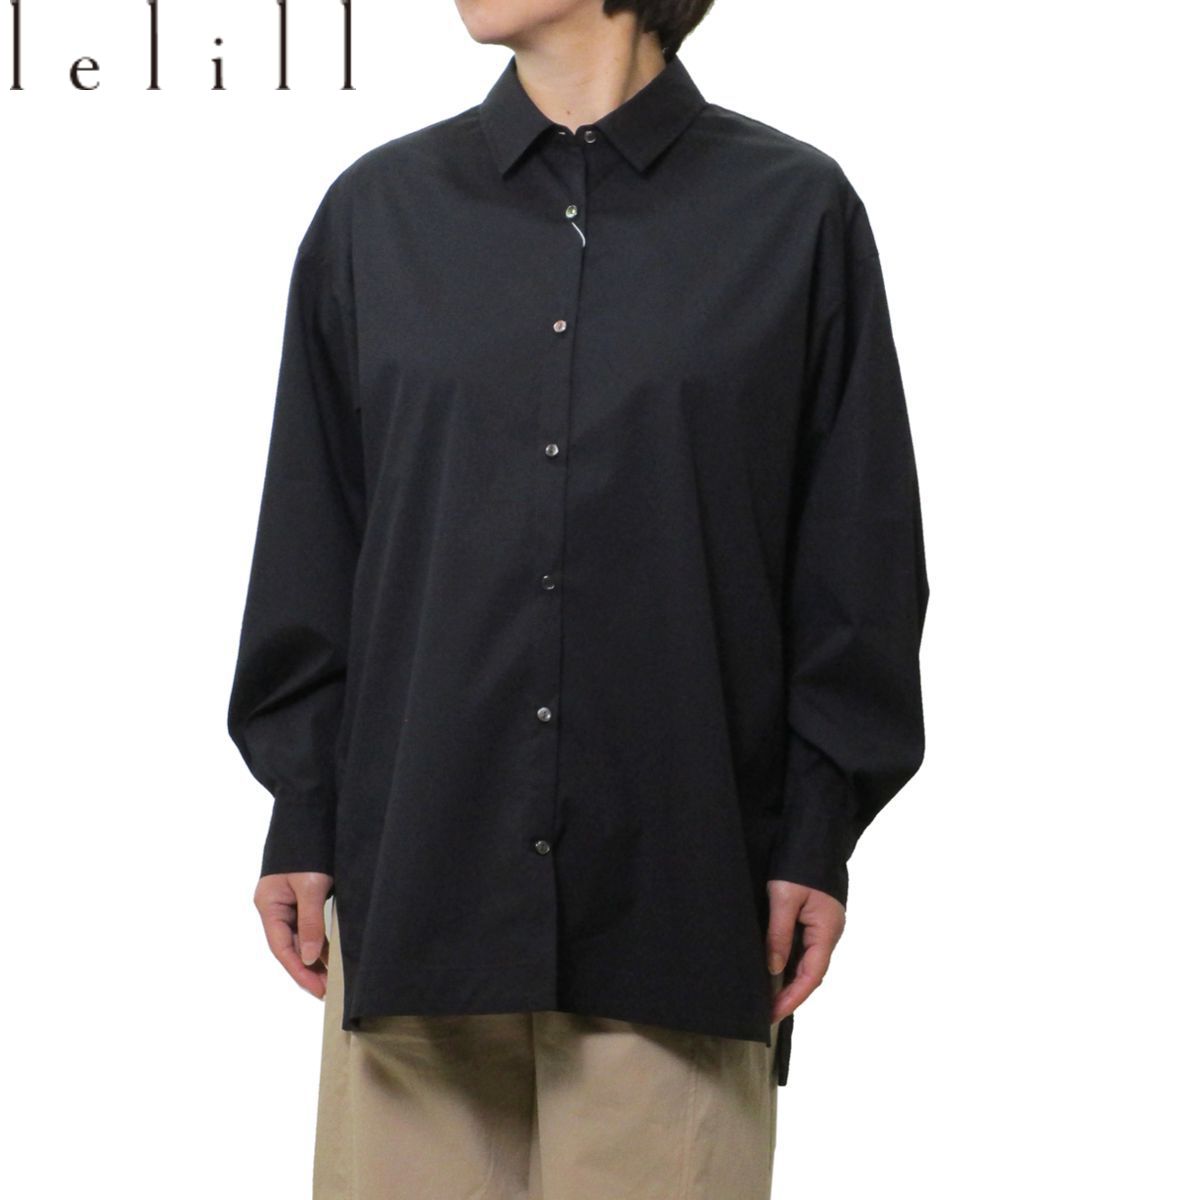 lelill(レリル) ピマソロバックオープンシャツ レディース カラー 全2色 長袖 無地 【送料無料】 春 夏 服